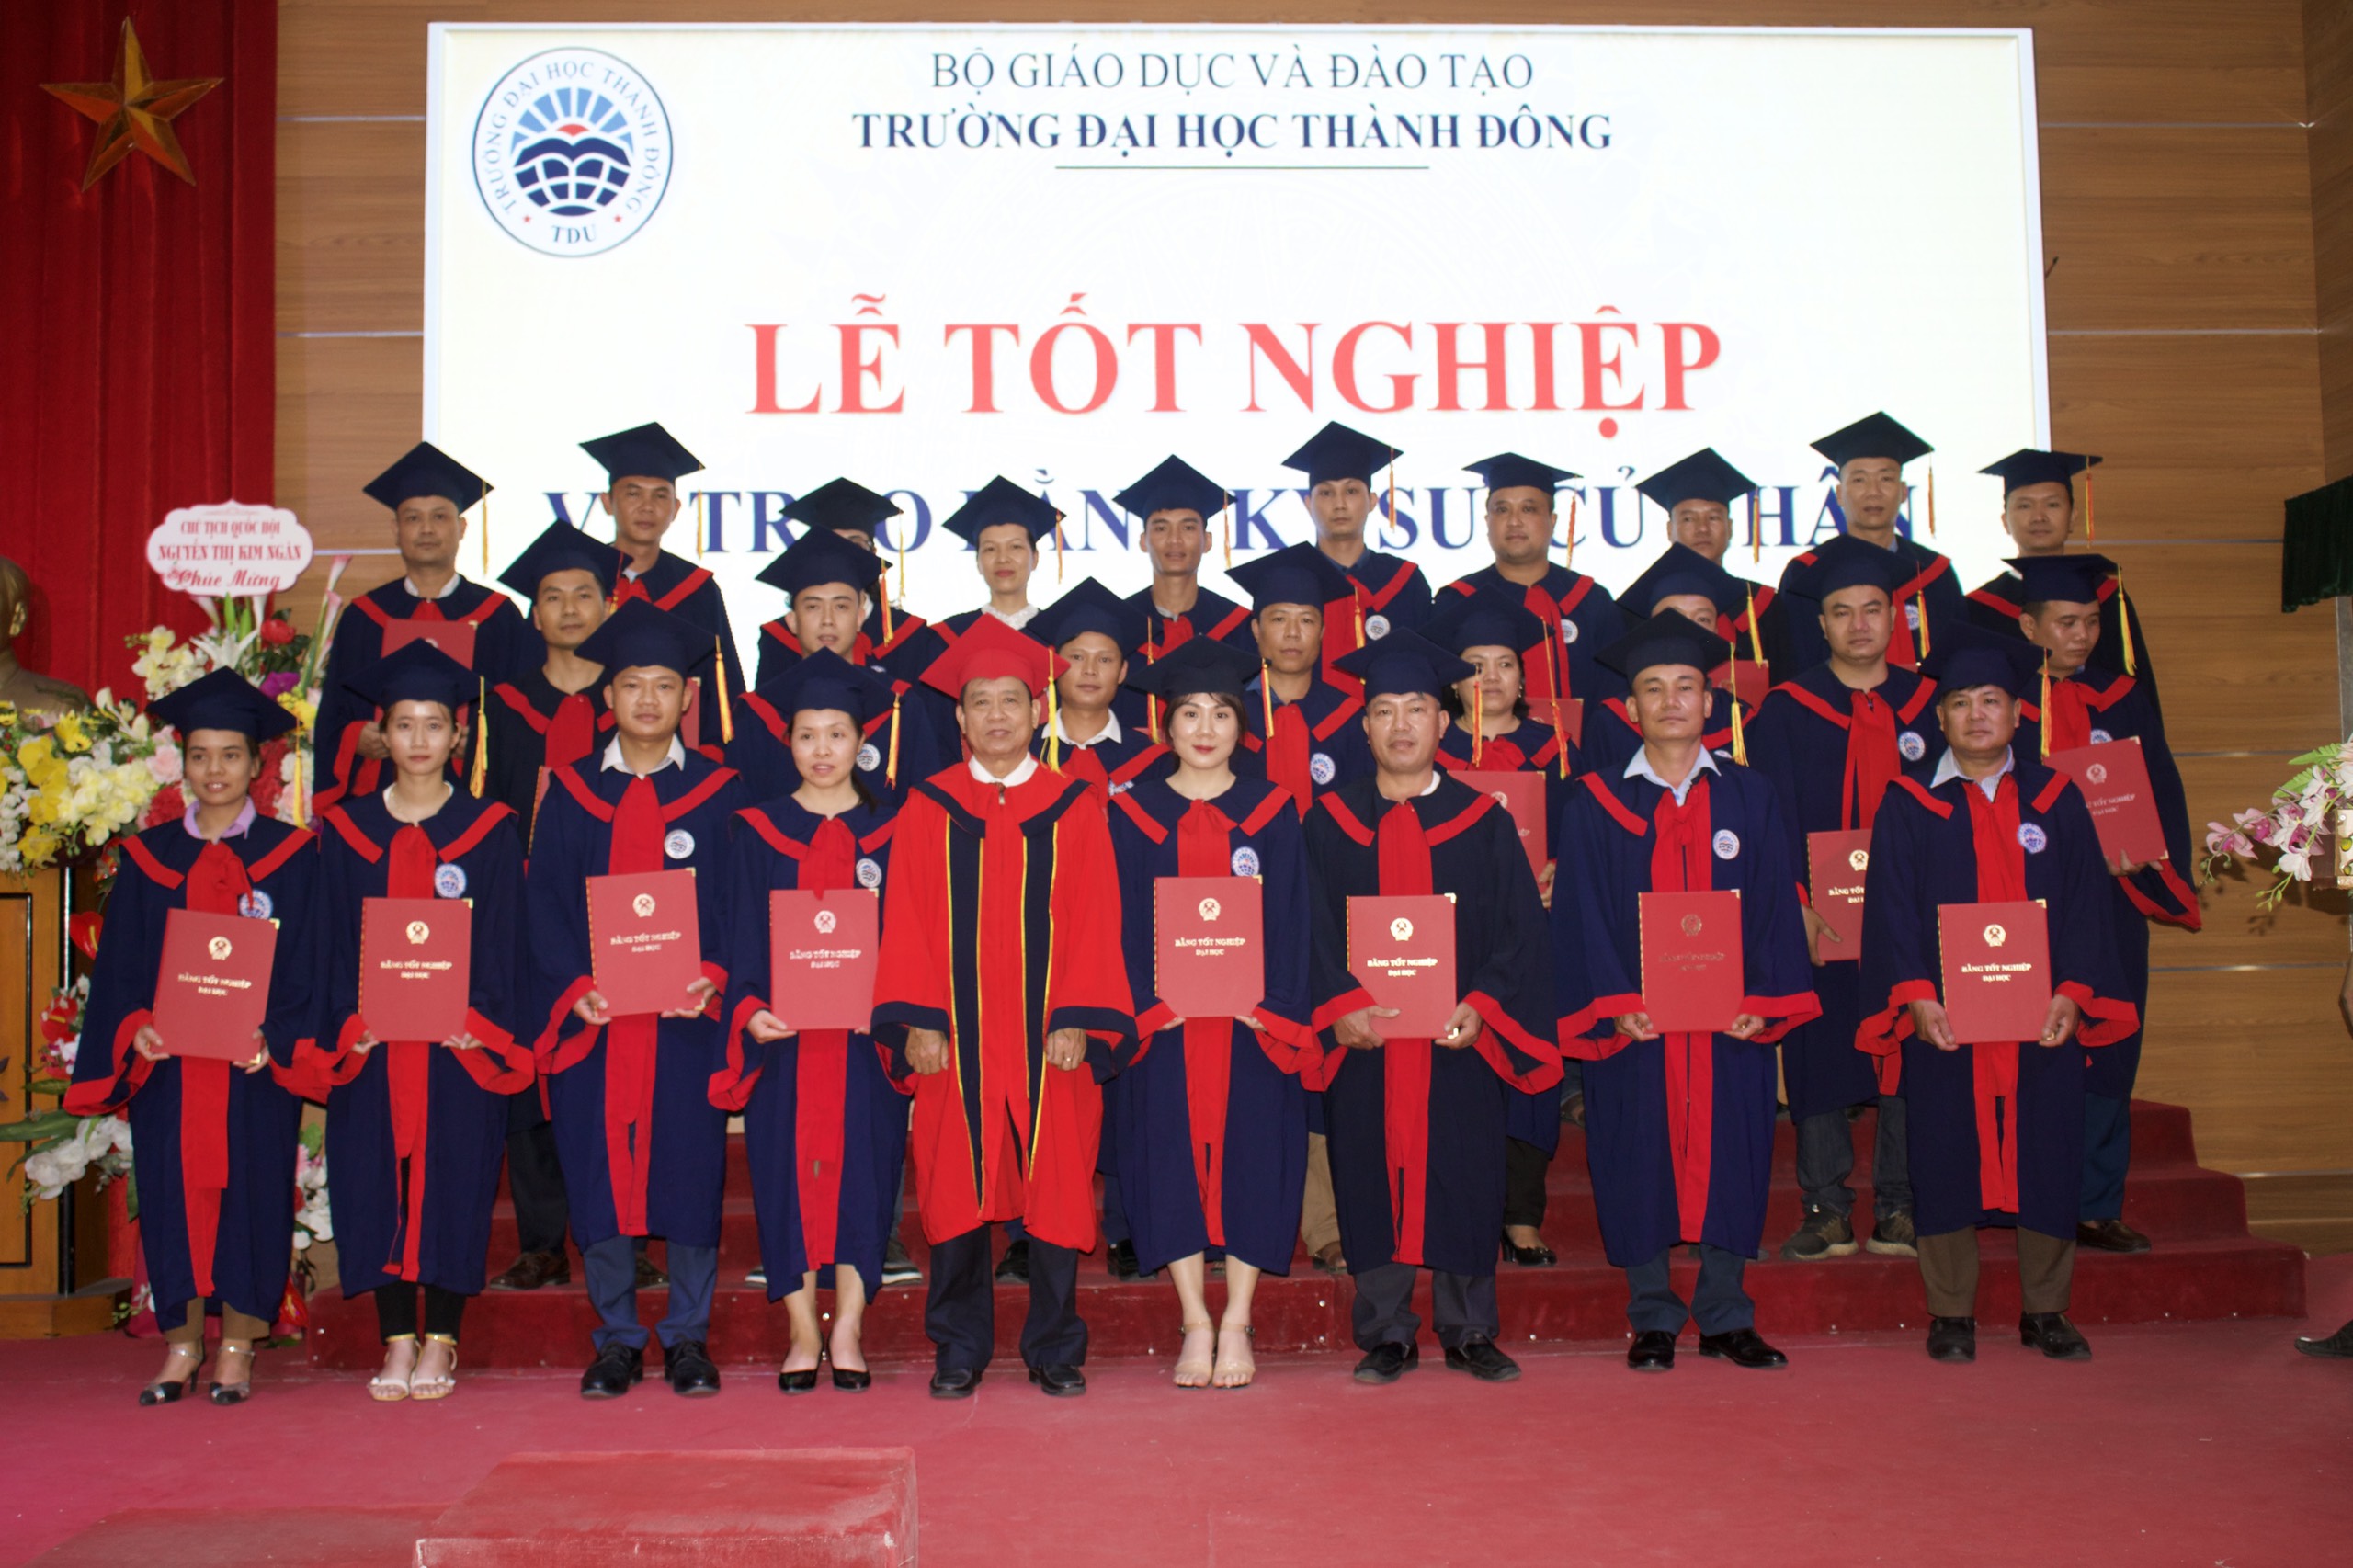 Lễ tốt nghiệp Đại học Thành Đông - Tuyển Sinh đại học từ xa